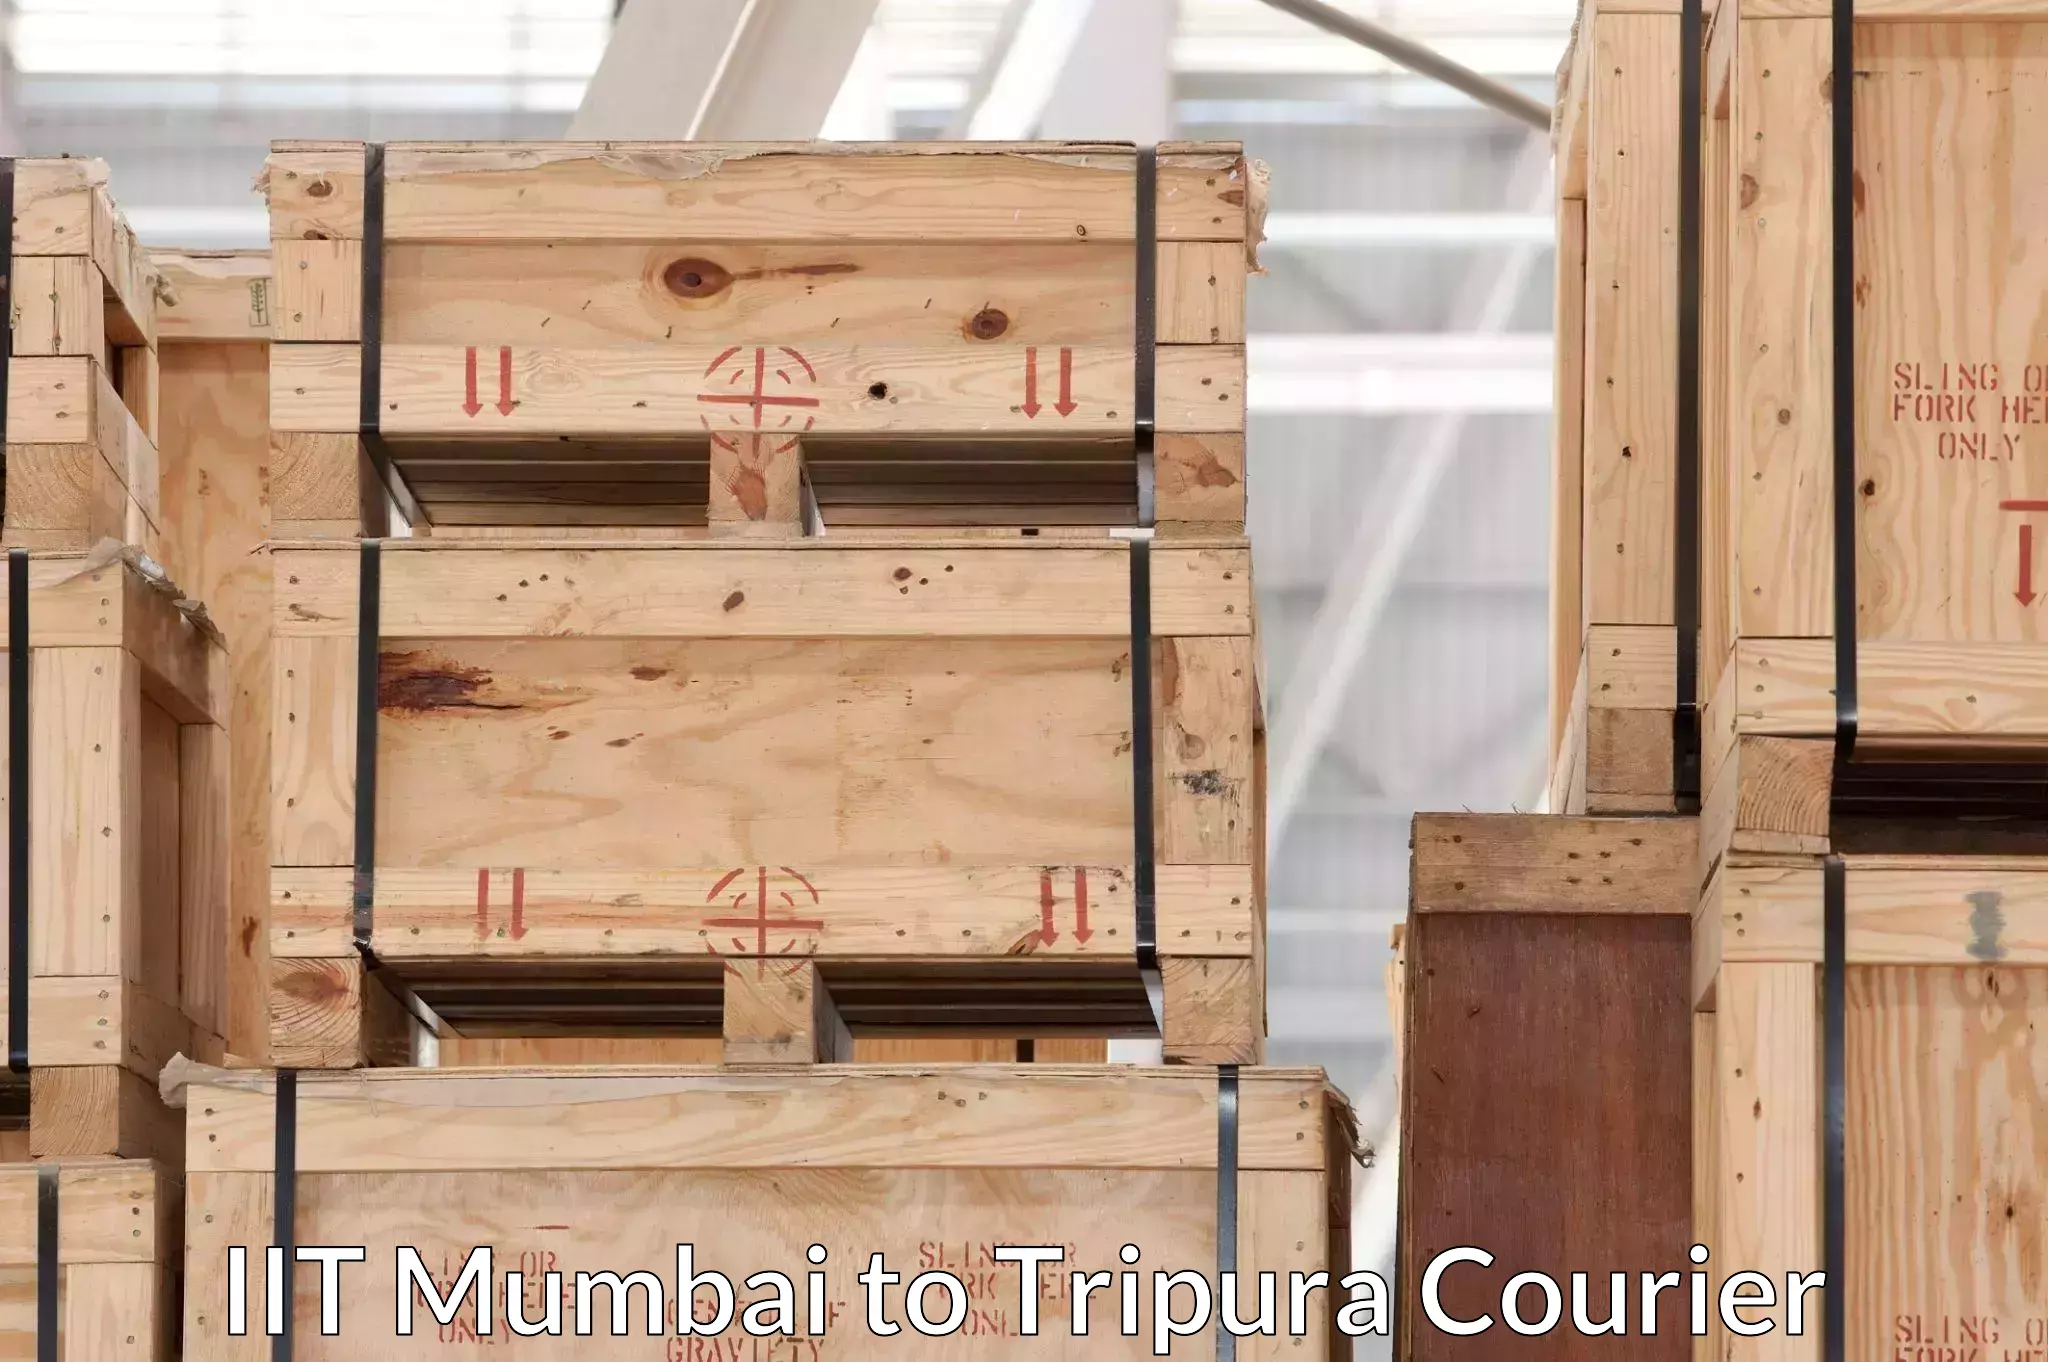 Home goods movers IIT Mumbai to Udaipur Tripura